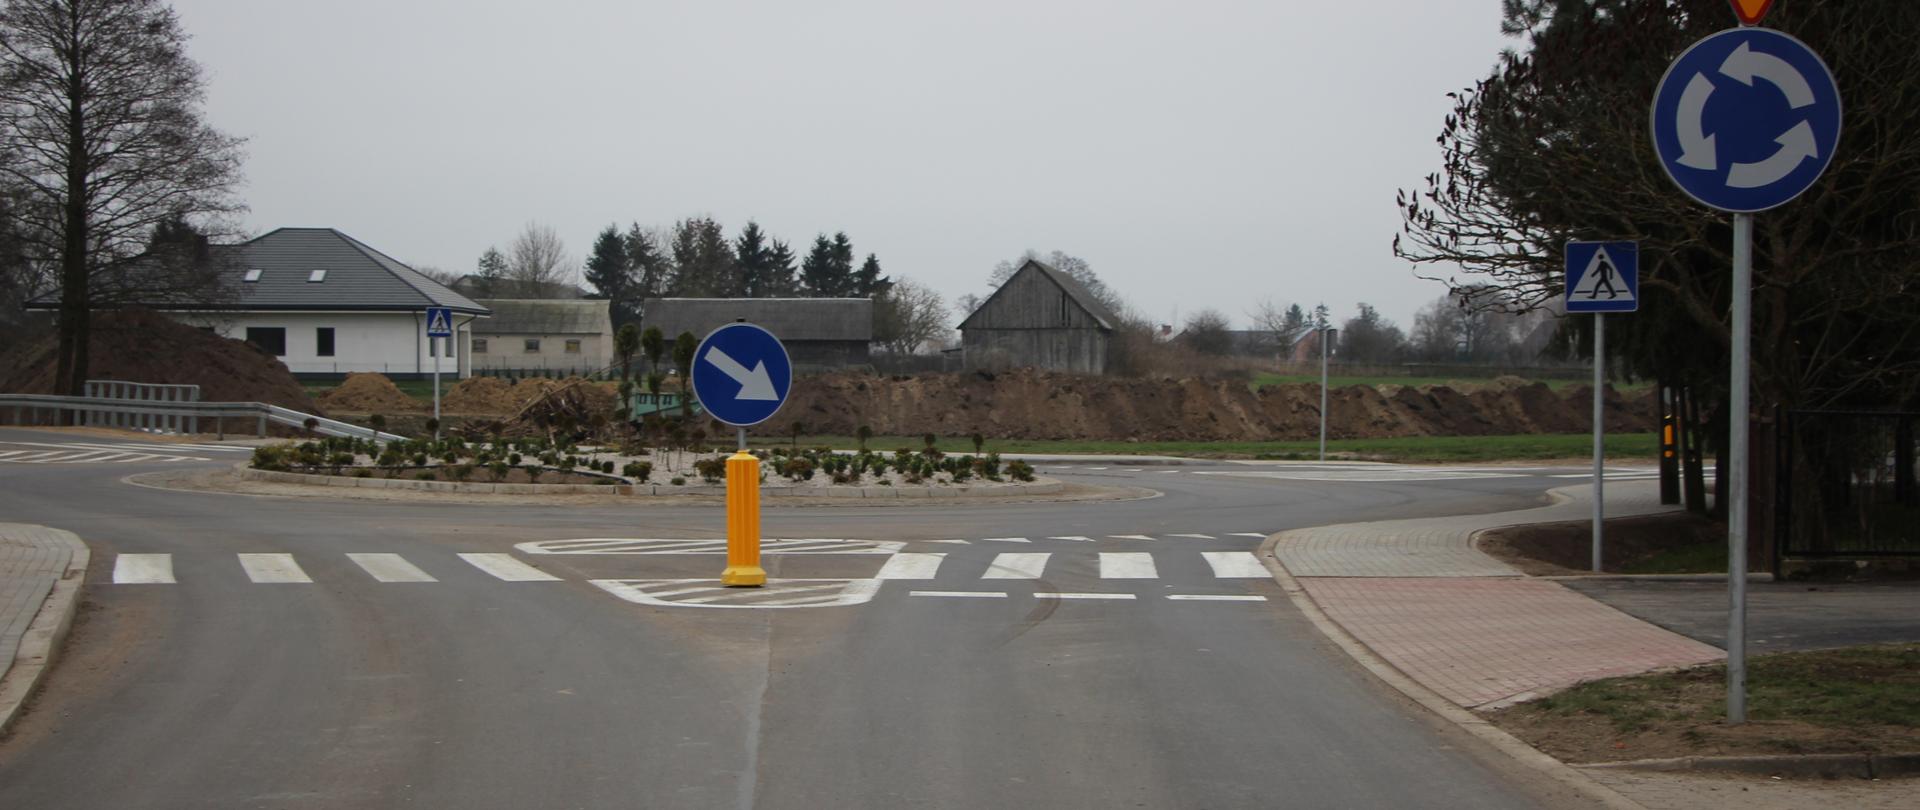 Zakończono prace drogowe związane z przebudową skrzyżowania dróg powiatowych Nr 2025B i 2030B w miejscowości Srebrna